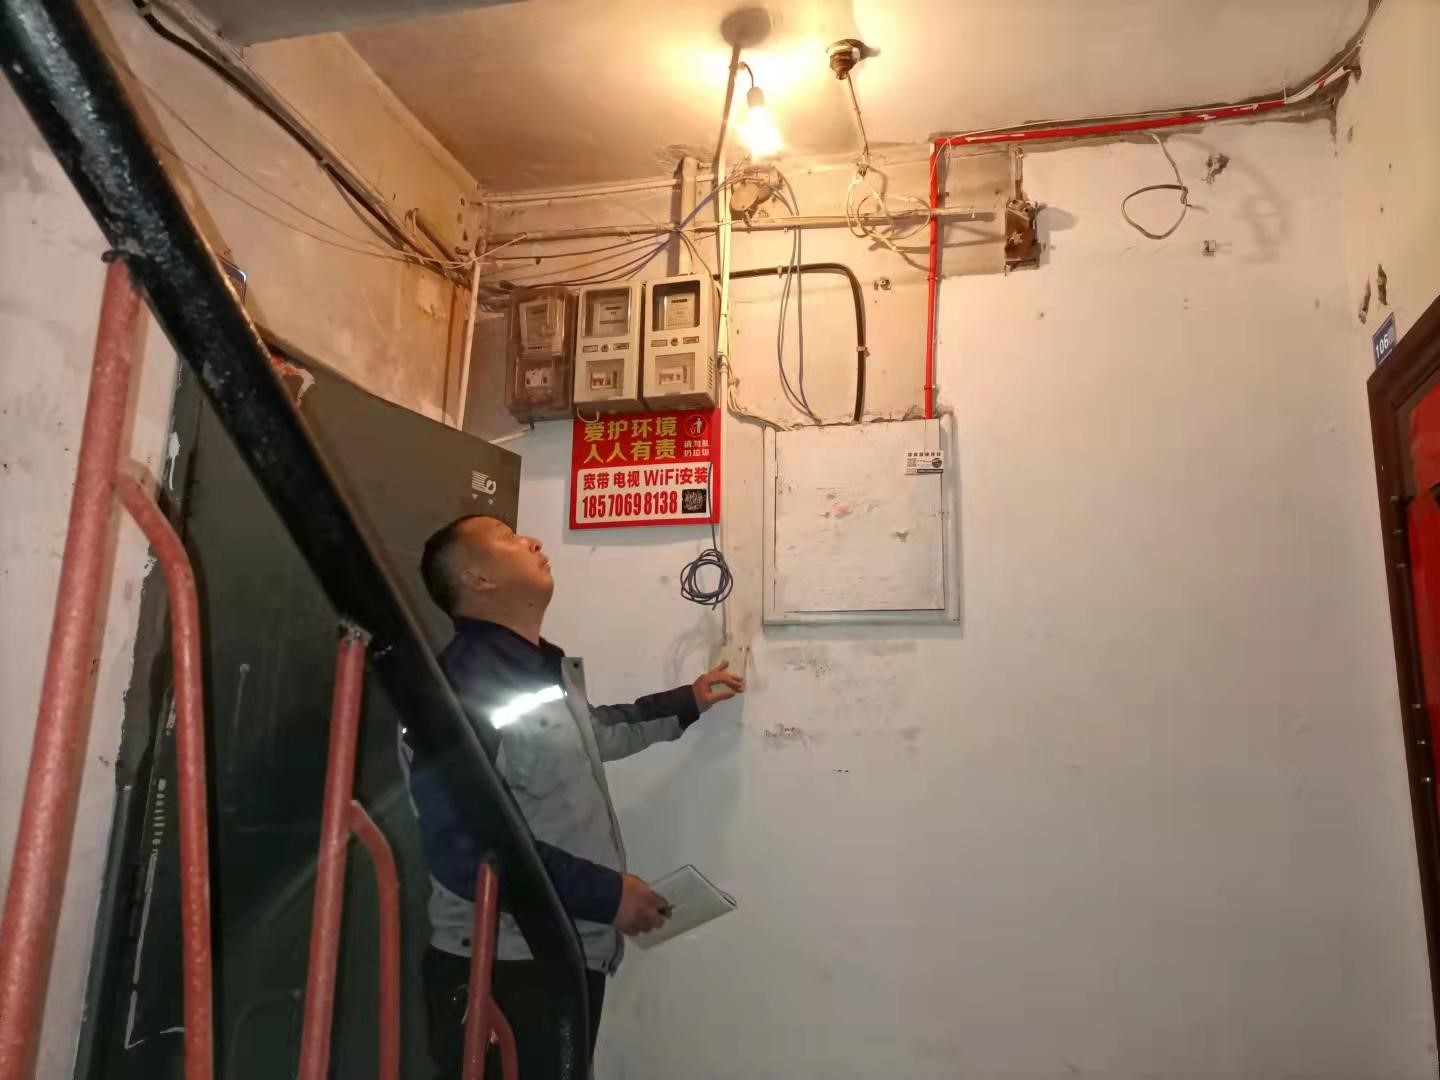 工程师傅免费为楼道更换灯泡。